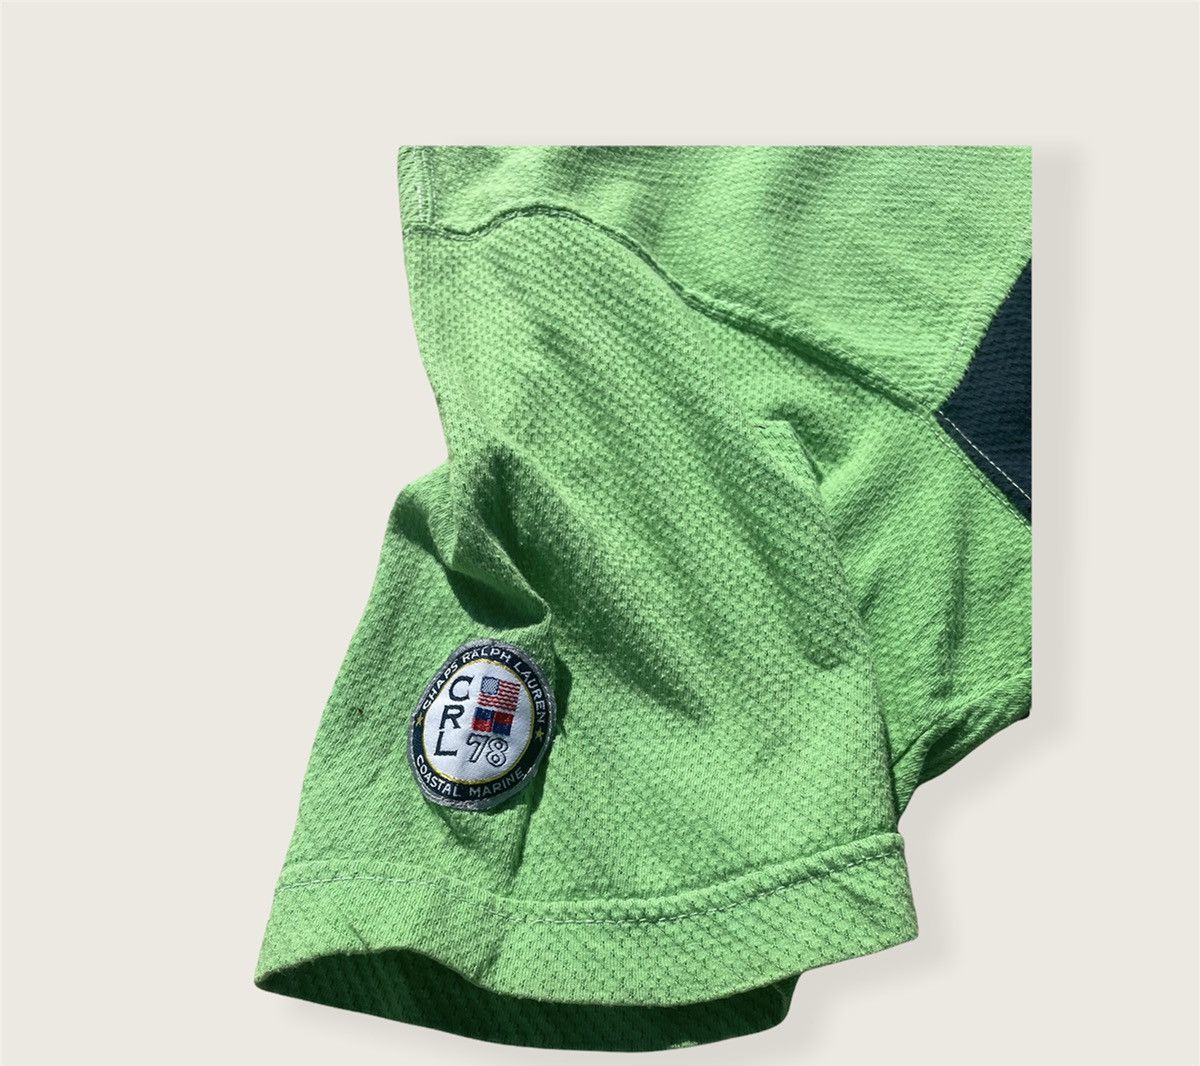 Chaps Ralph Lauren Green ralph lauren chaps t shirt Size US M / EU 48-50 / 2 - 6 Preview